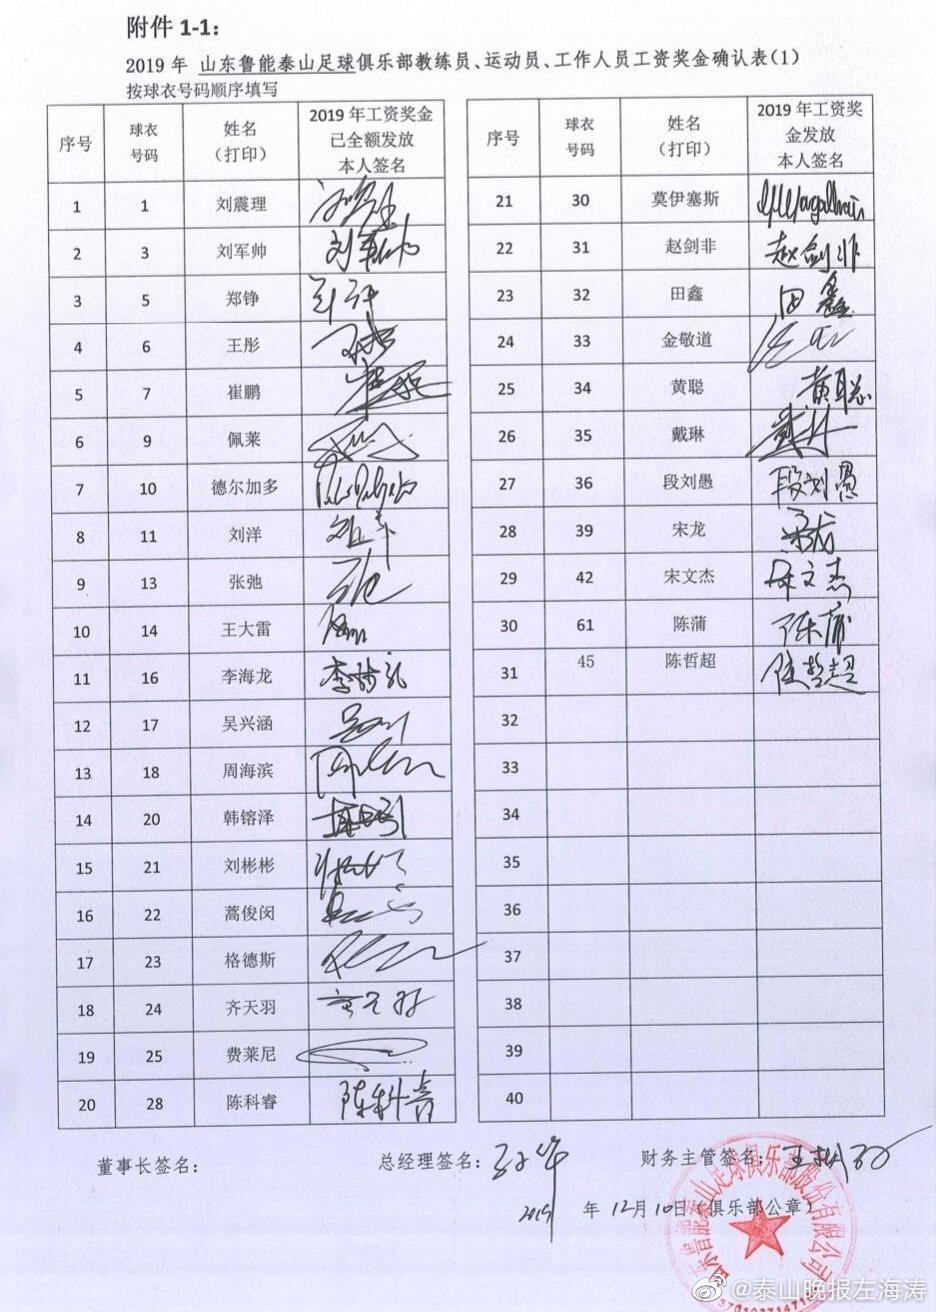 鲁能工资确认表球员花式签名各不同，费莱尼像画圈圈蒿俊闵天秀王大雷似是胡乱划(1)